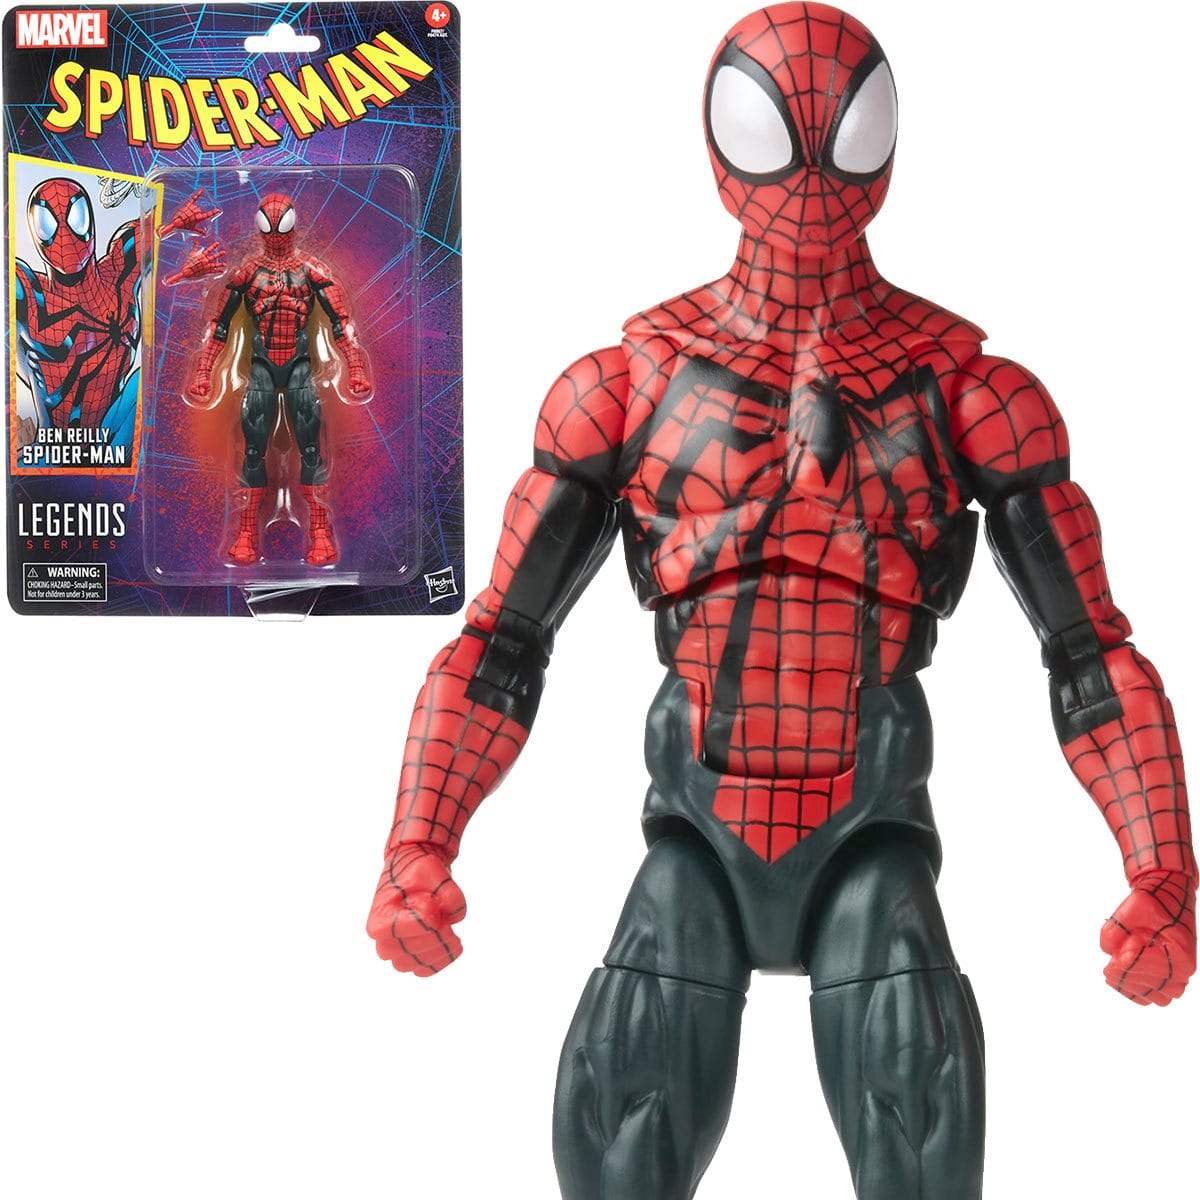 Spider-Man Retro Marvel Legends Ben Reilly Spider-Man 6-Inch Action Figure With Front 